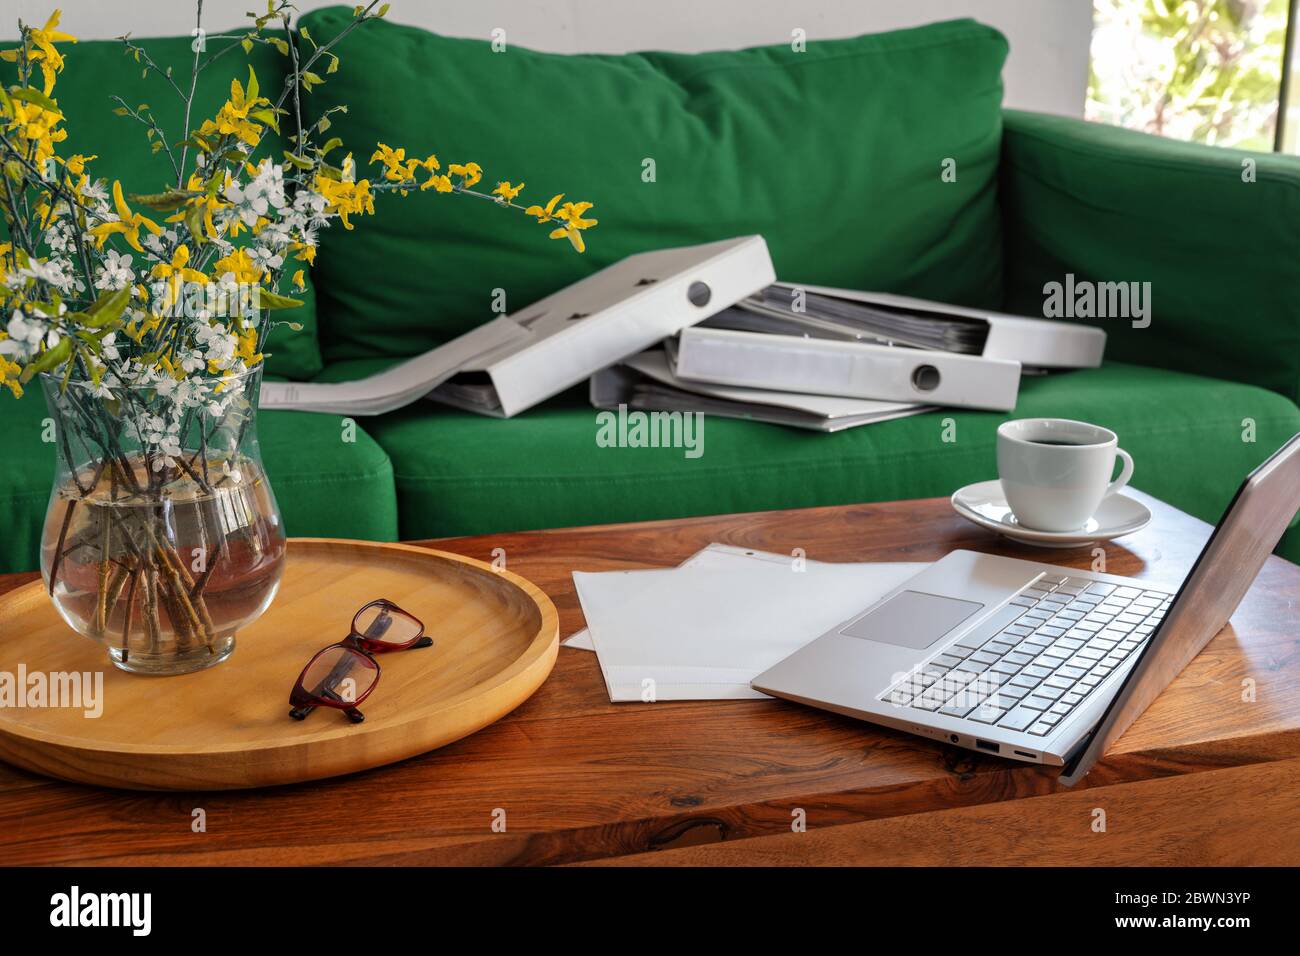 Home Office im Wohnzimmer, Laptop auf dem Couchtisch und Ringordner auf der Couch, außergewöhnliche Arbeitssituation während der Pandemie Coronaviru Stockfoto